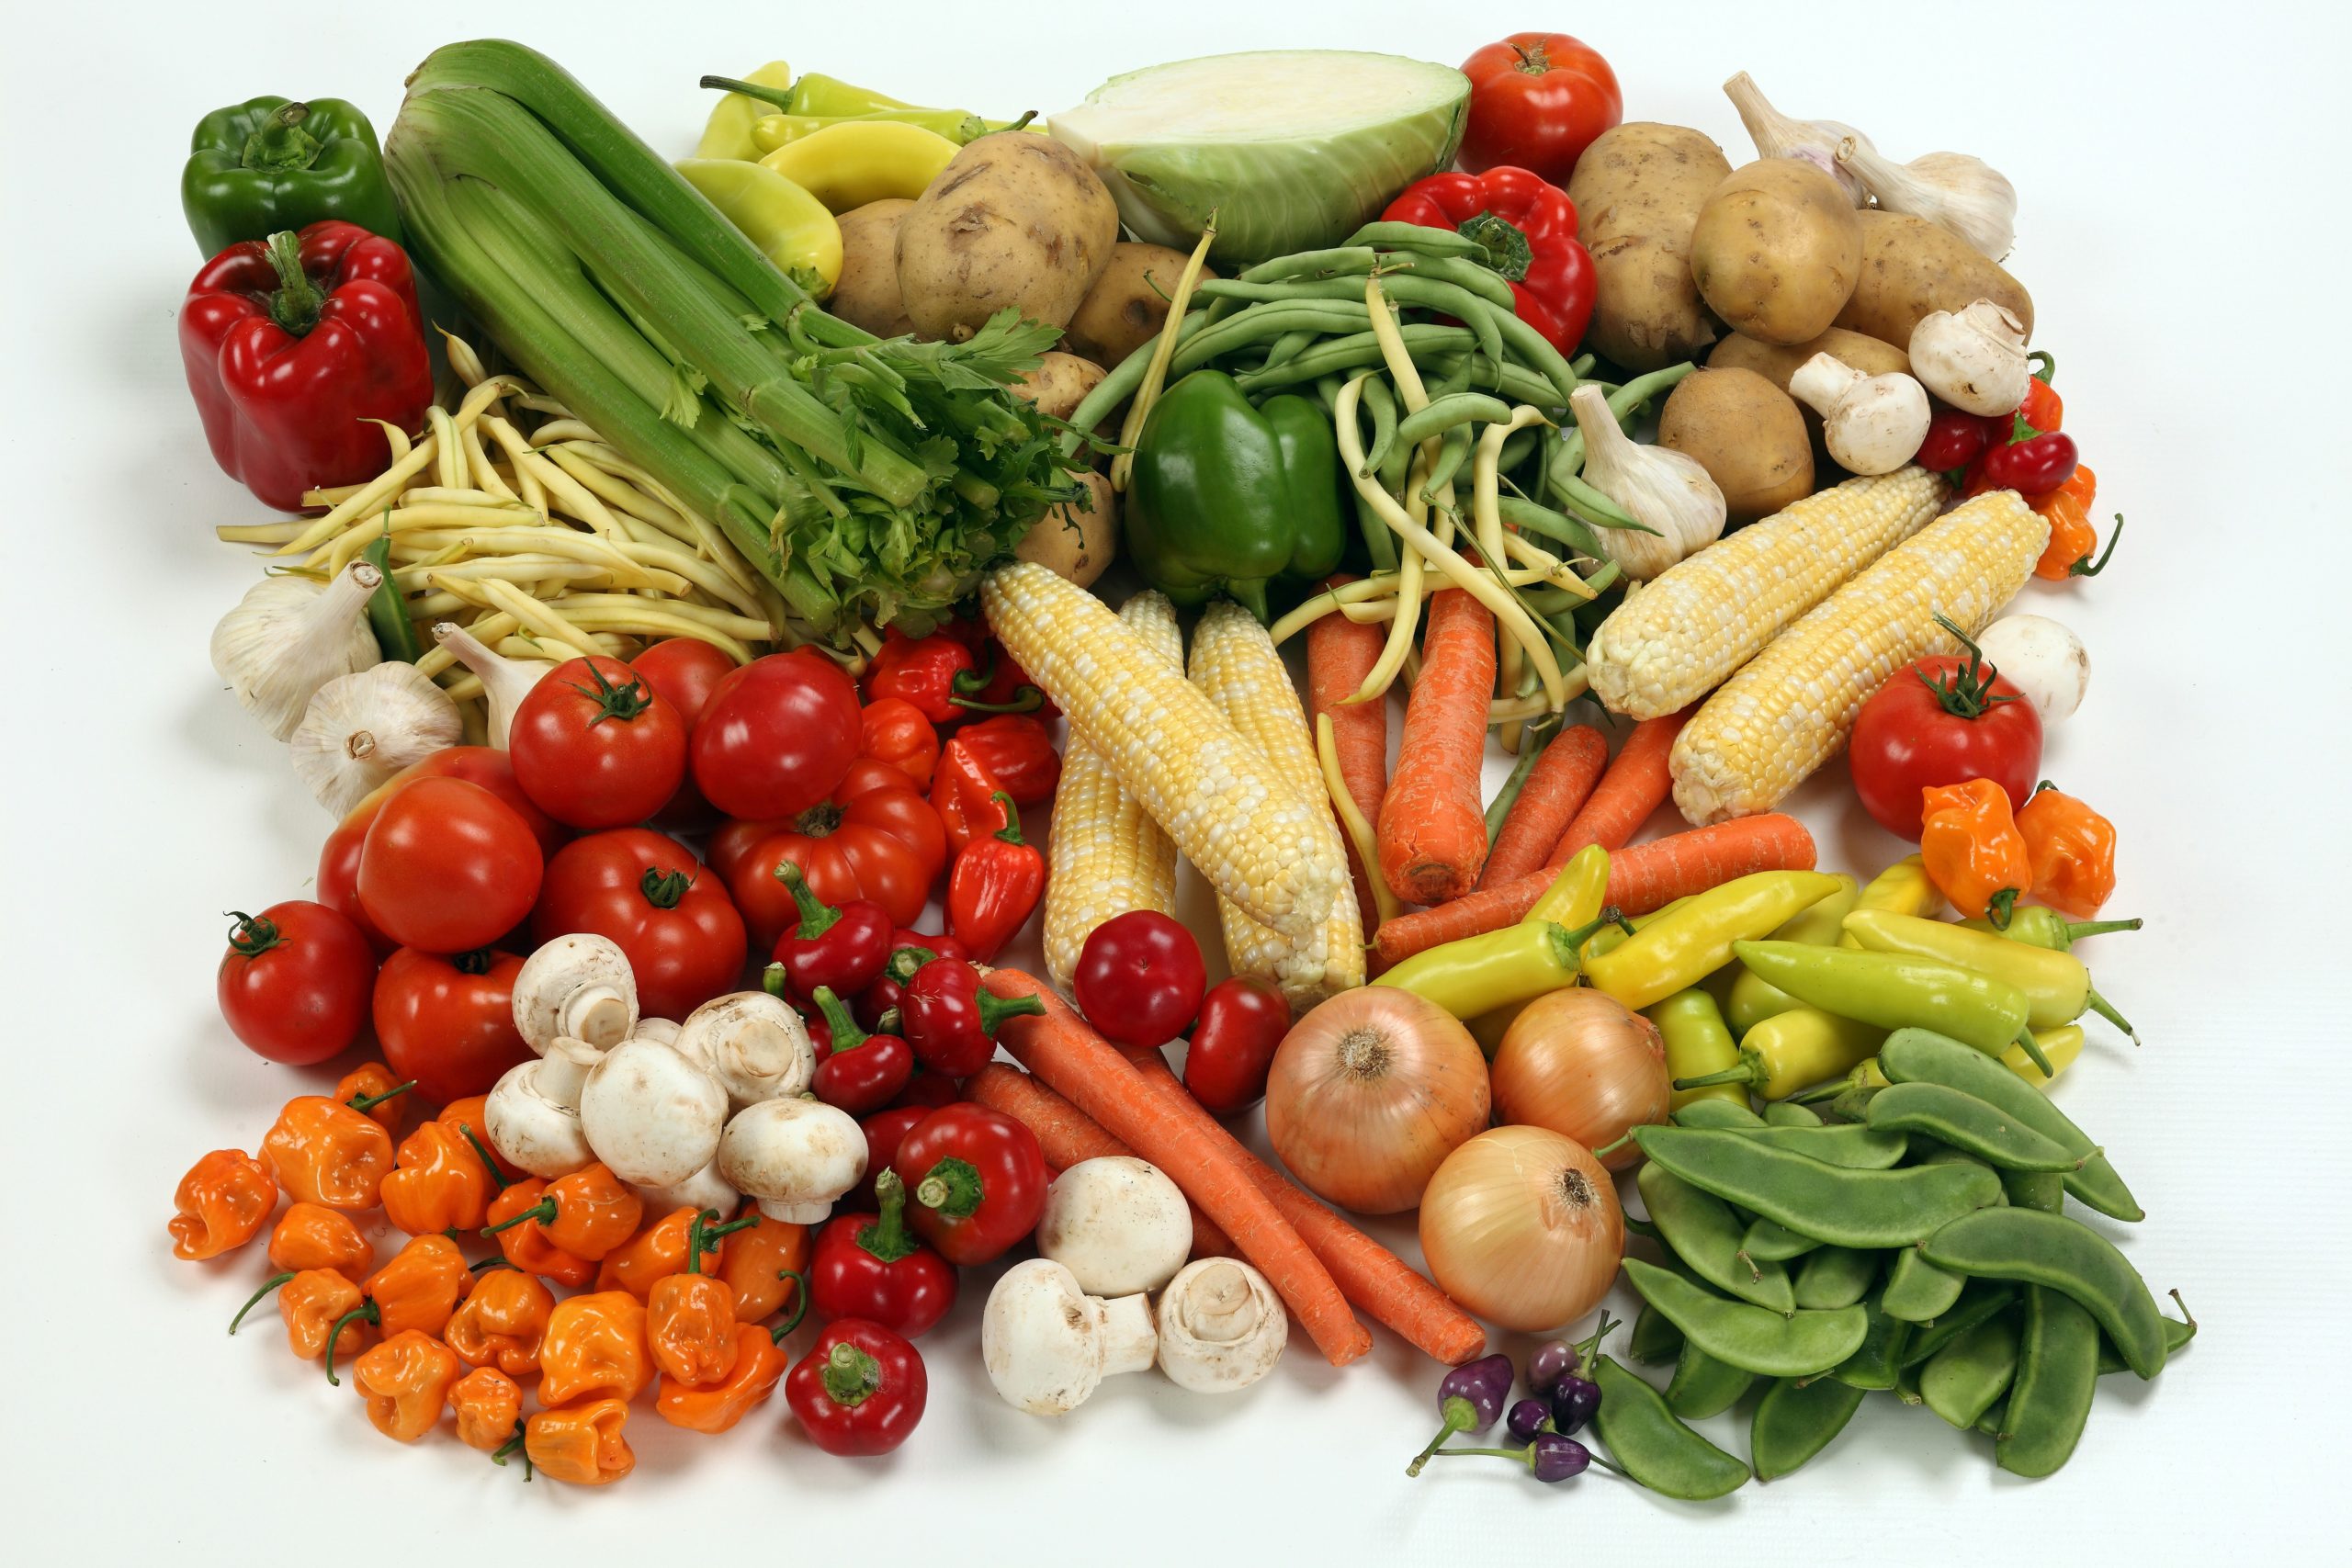 αυτό είναι το νο1 πιο υποτιμημένο λαχανικό – είναι superfood για το έντερο, σύμφωνα με γαστρεντερολόγους